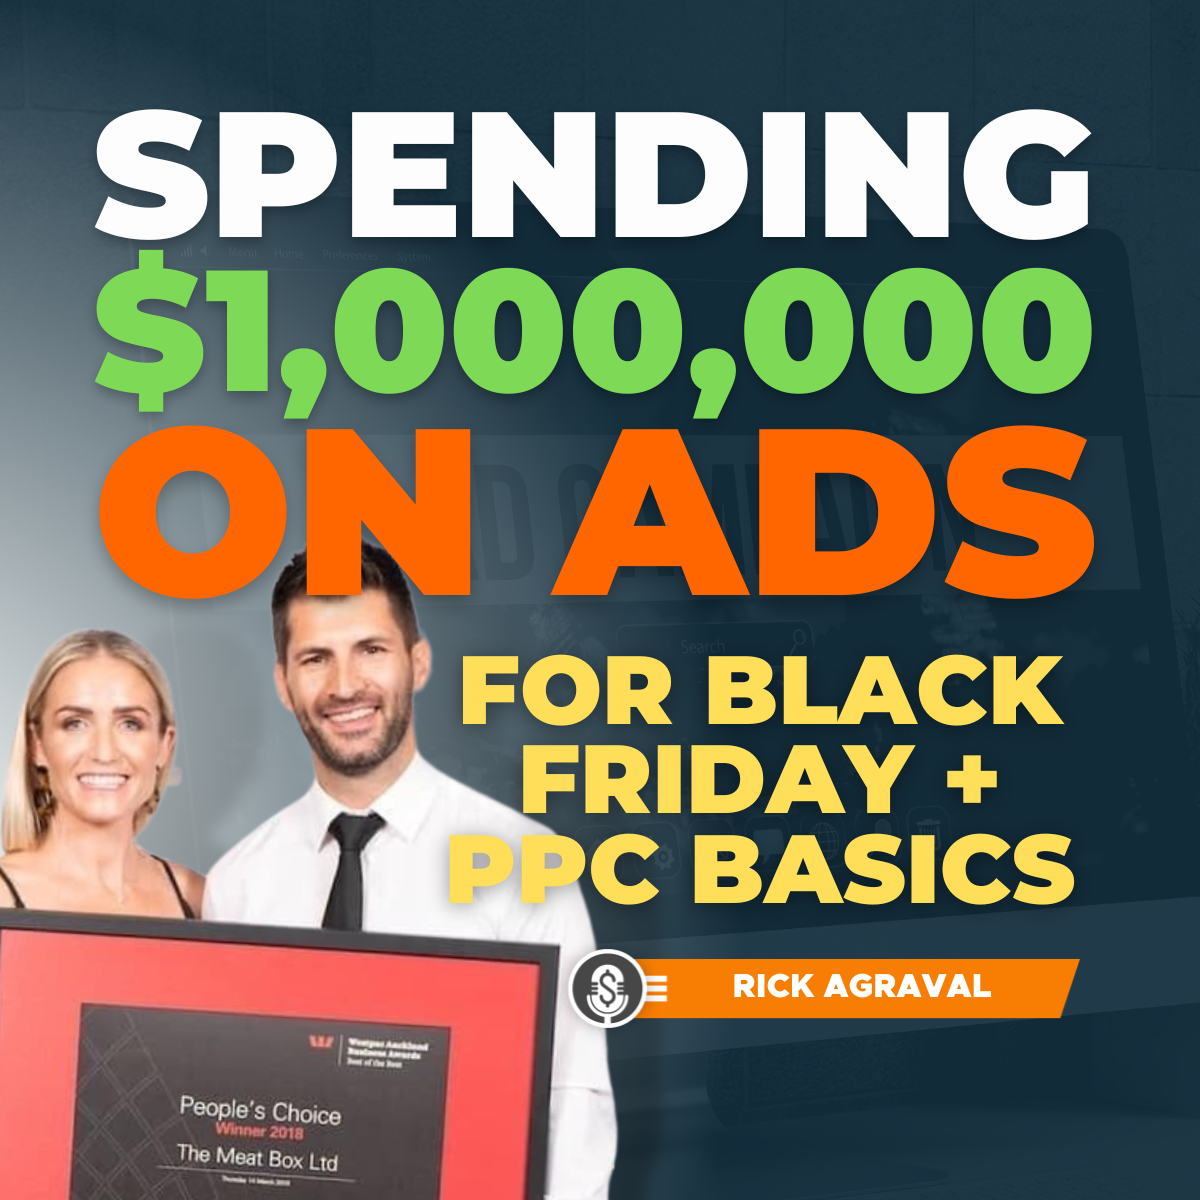 Rick Agraval on spending $1,000,000 on ads for Black Friday + PPC basics